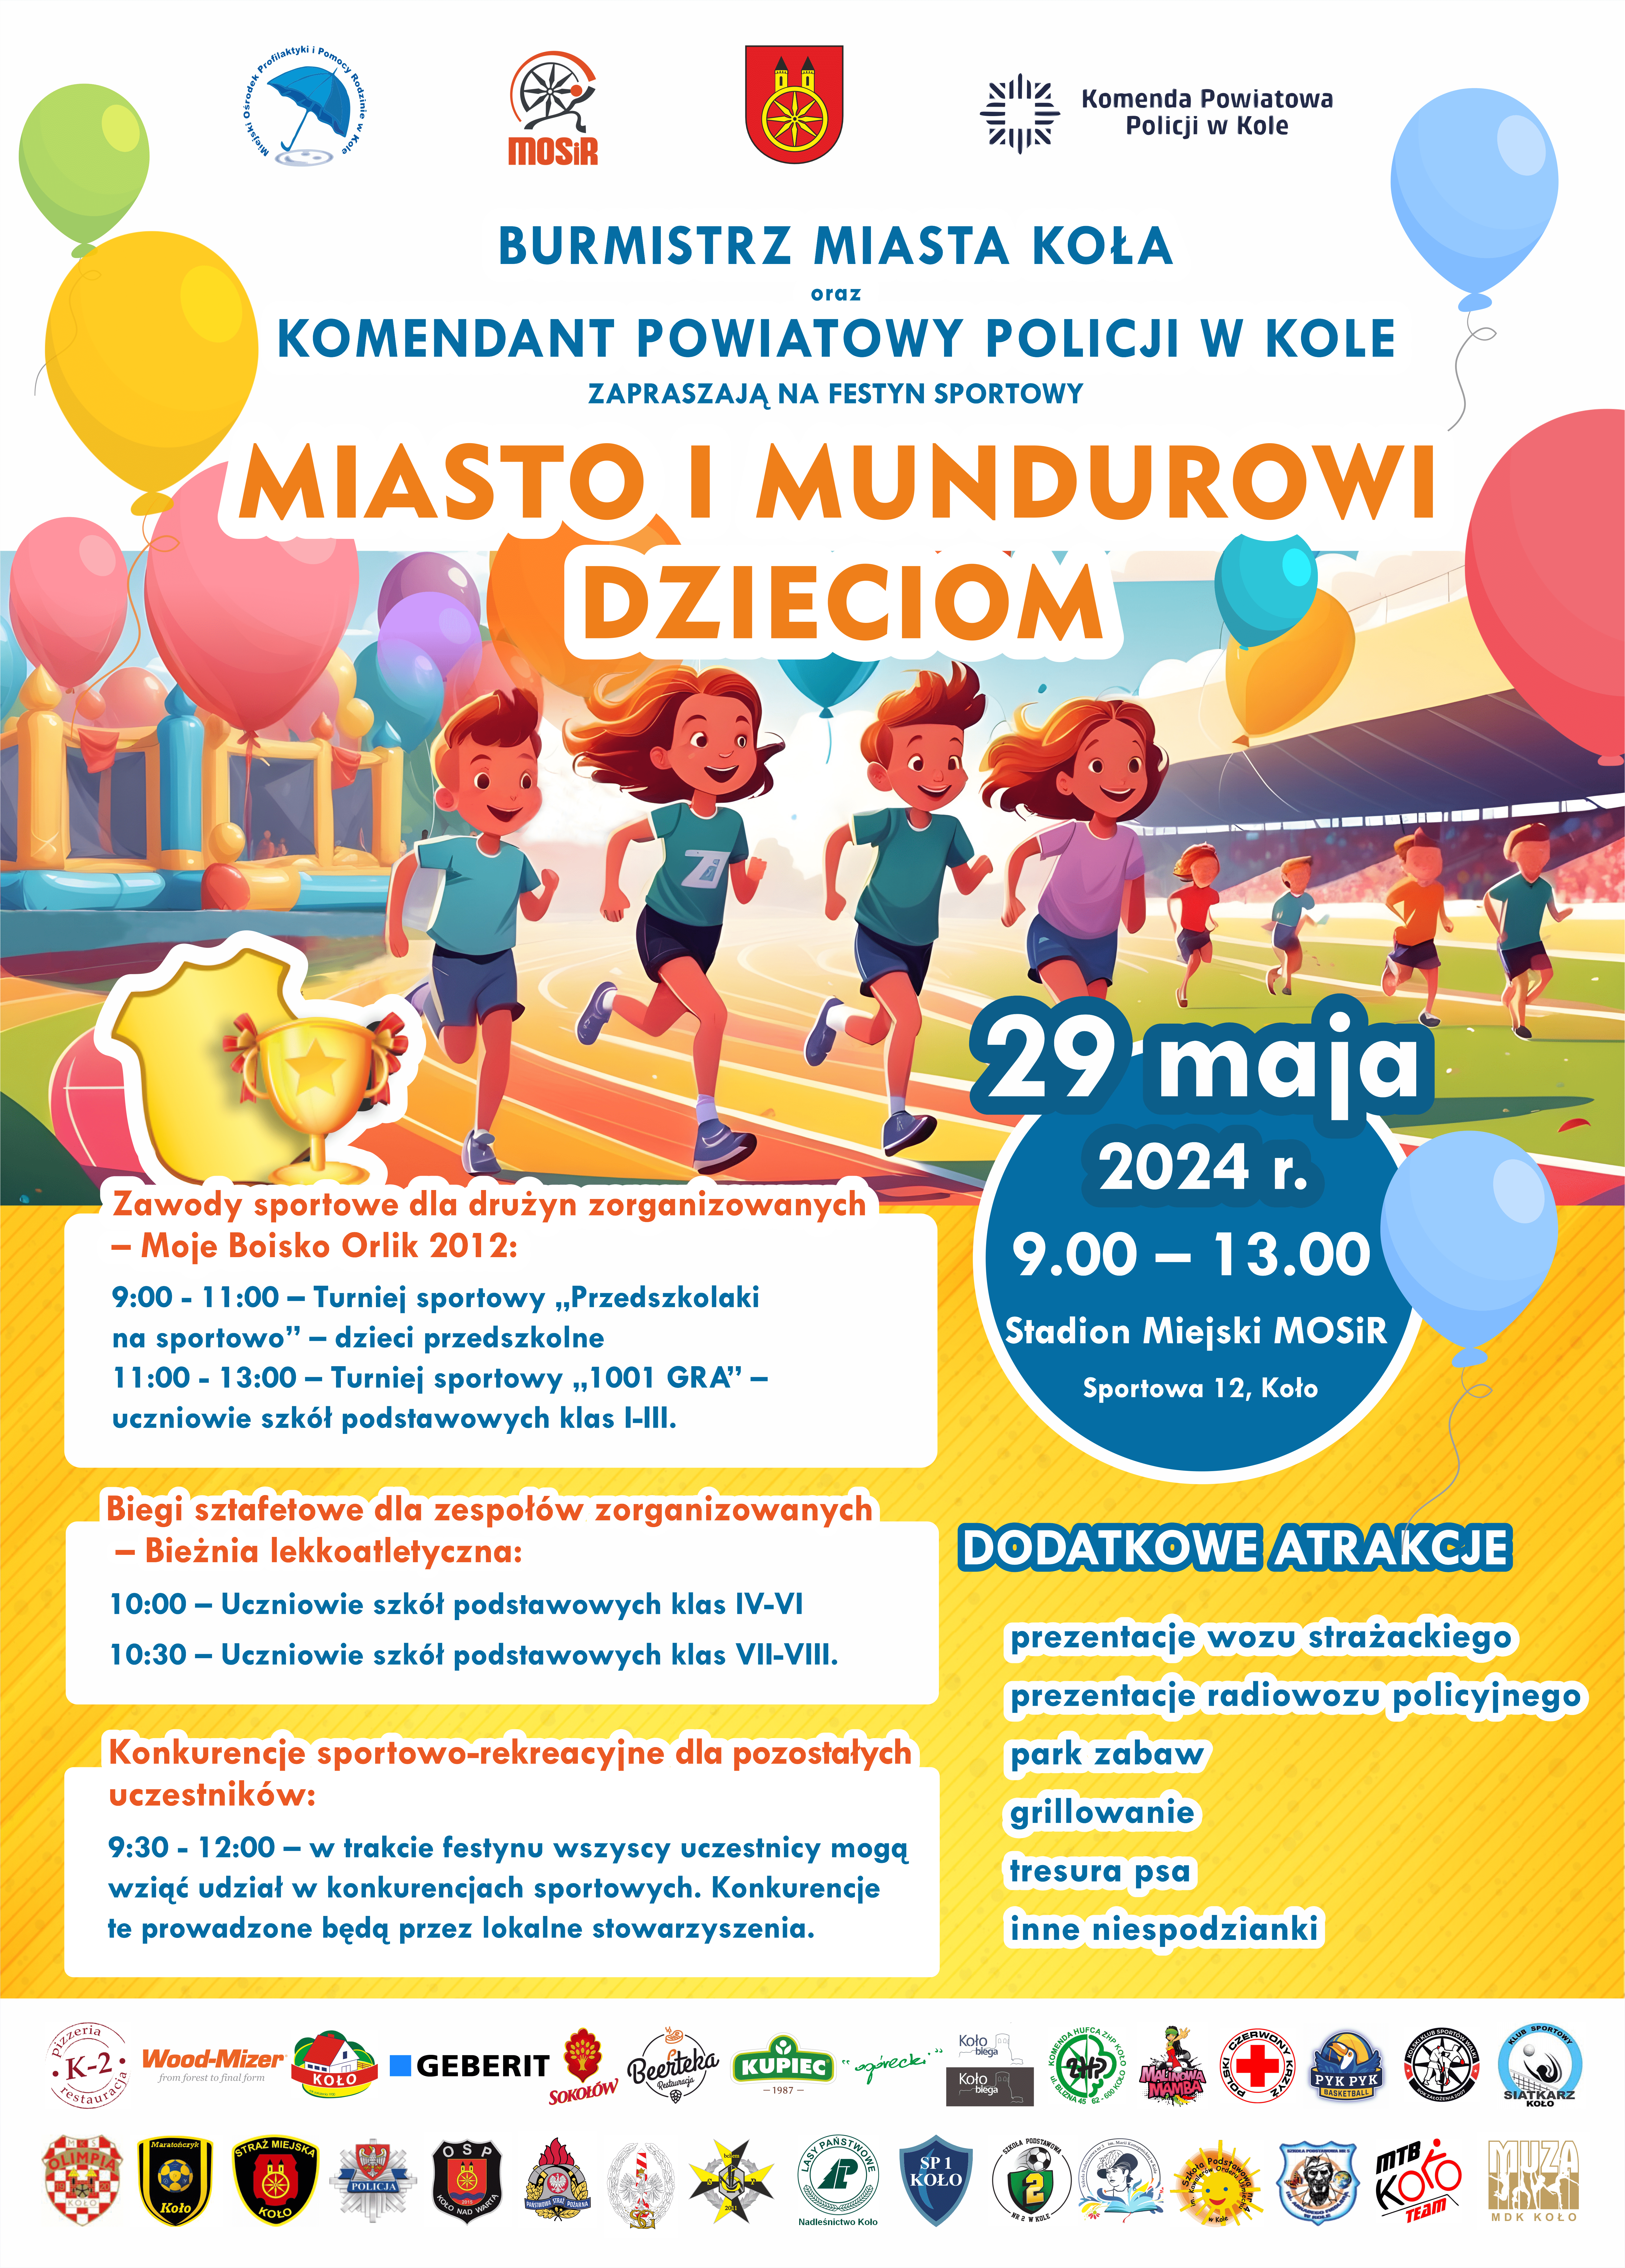 Plakat z programem festynu MIASTO I MUNDUROWI DZIECIOM, który odbędzie się 29 maja 2024